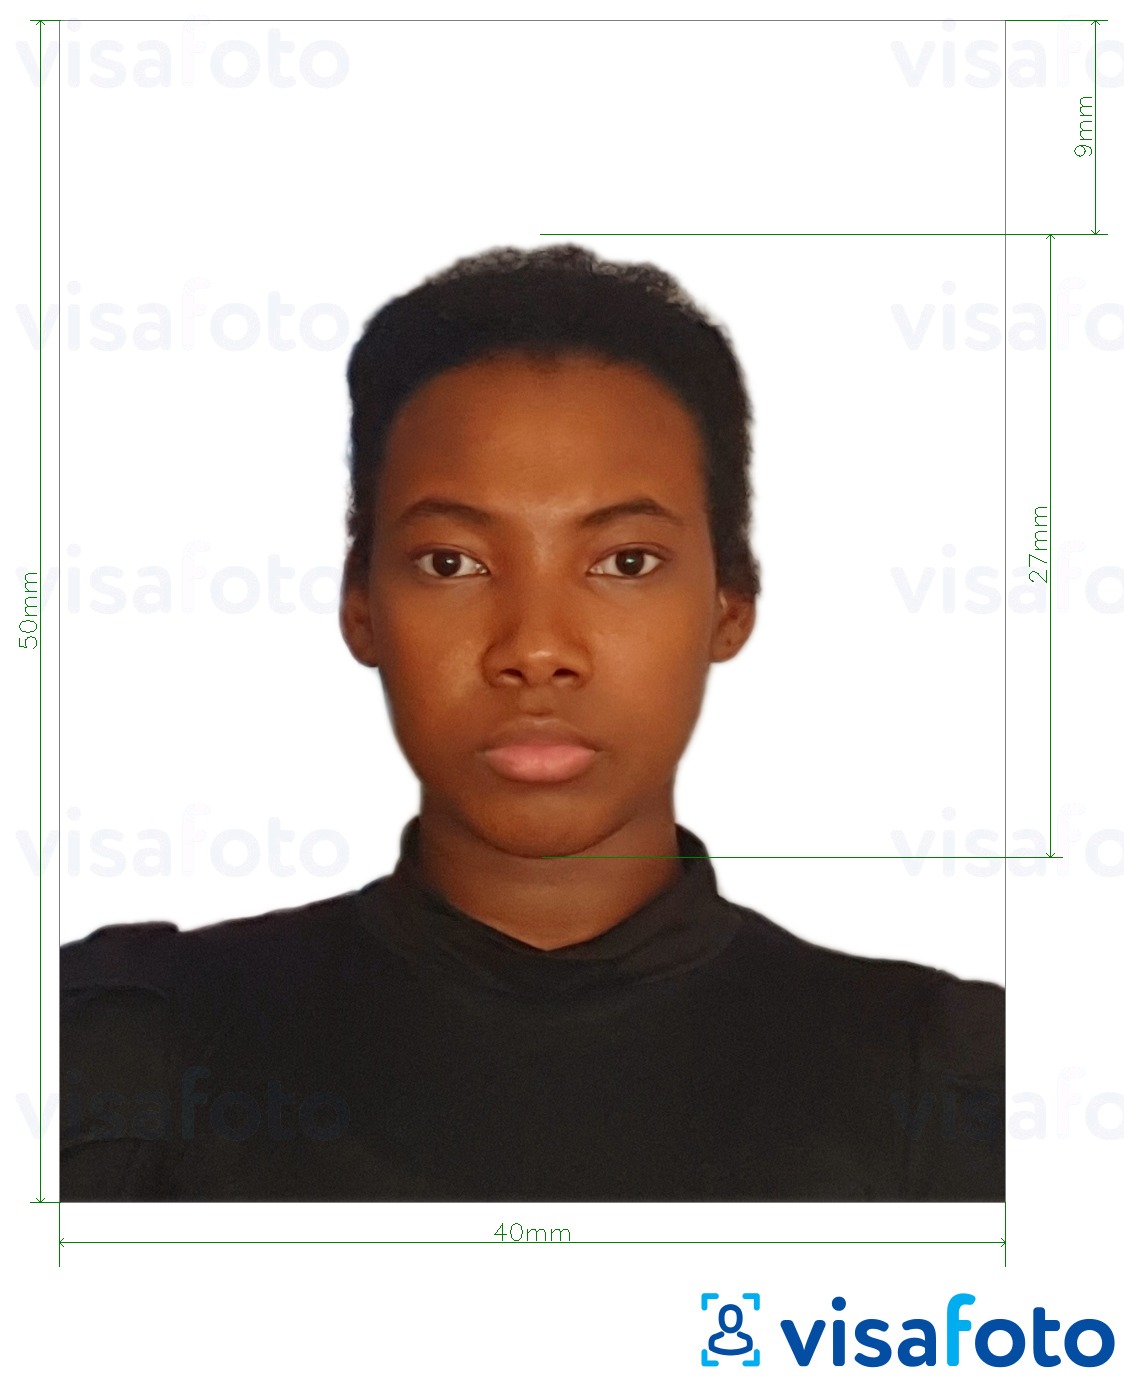 哥伦比亚身份证4x5厘米 的标准尺寸照片示例